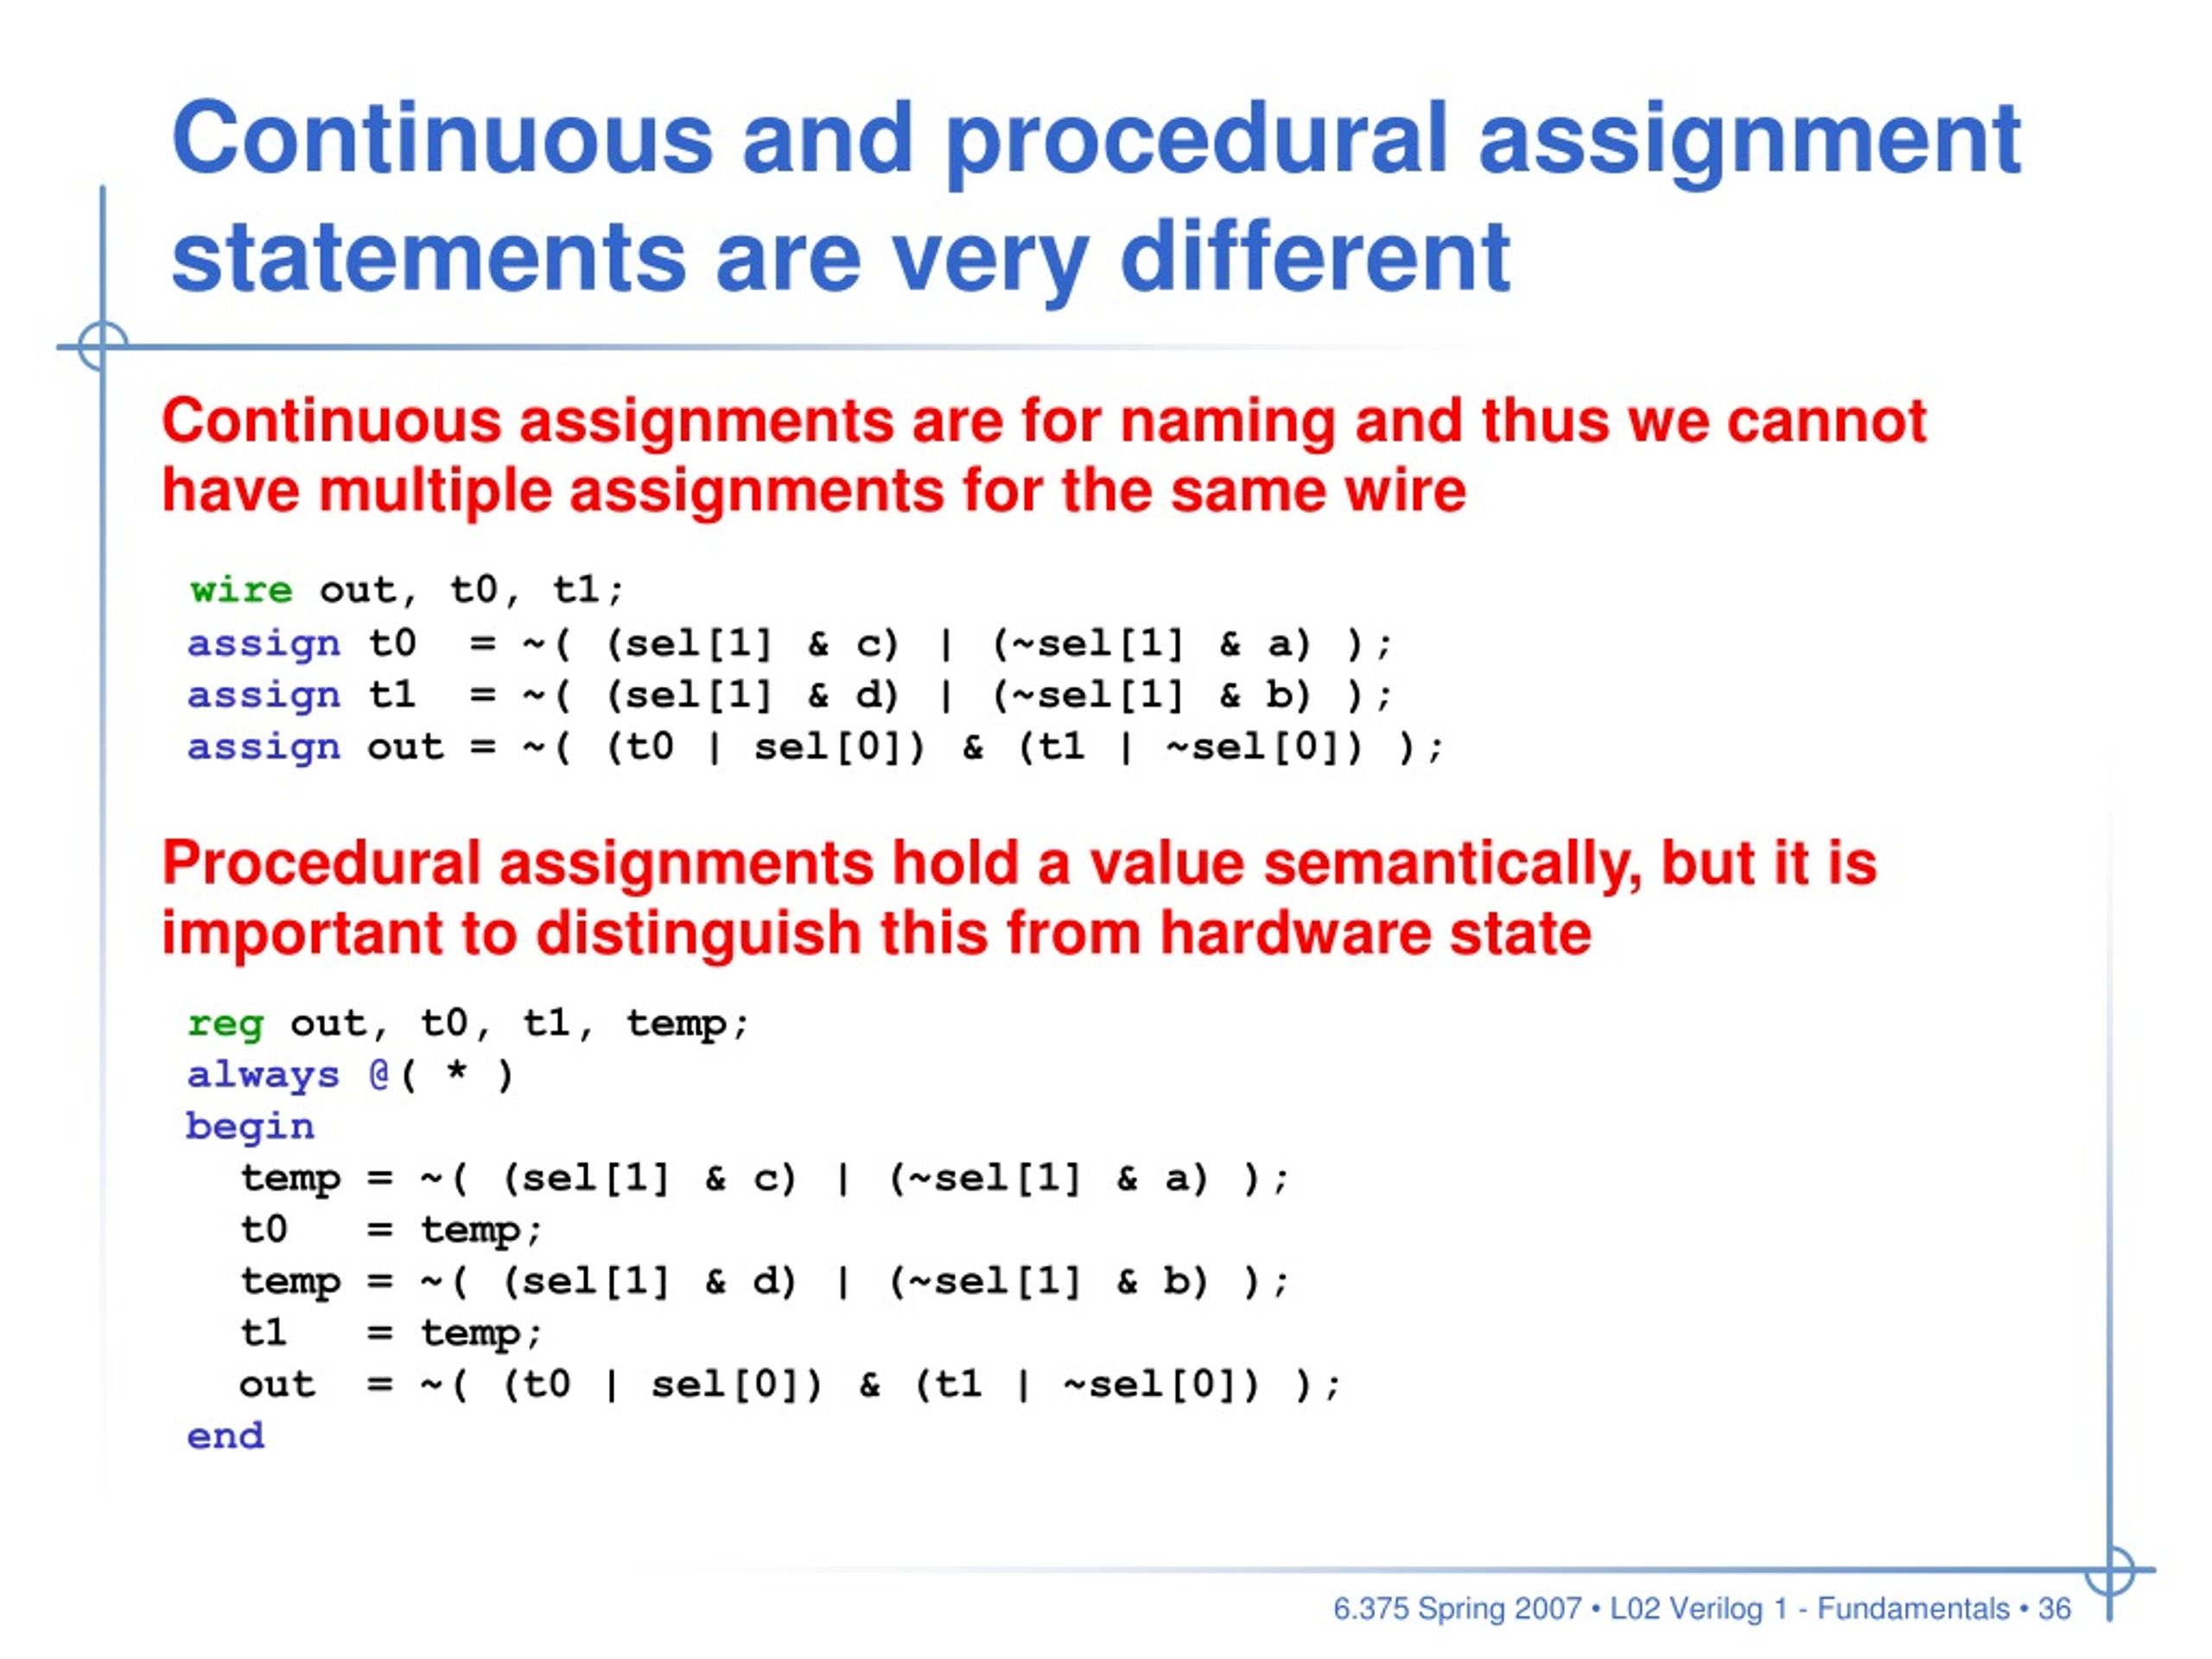 procedural assignment statement cannot drive a net